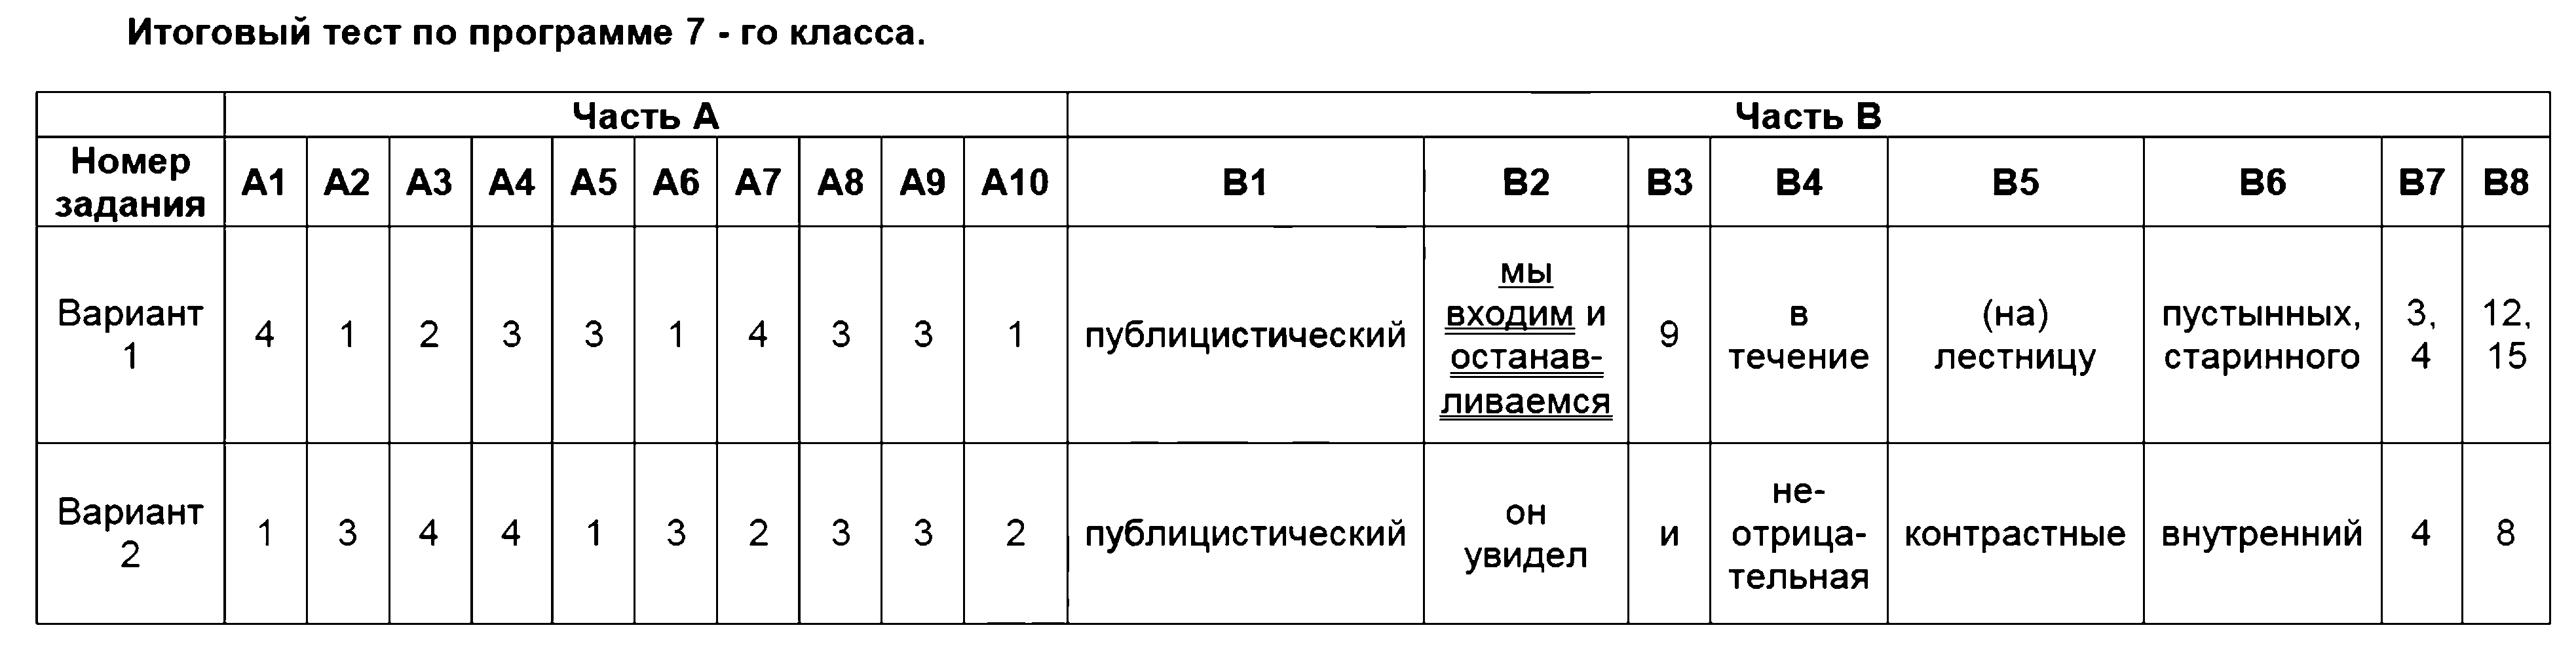 ГДЗ Русский язык 7 класс - 23. Итоговый тест по программе 7 - го класса